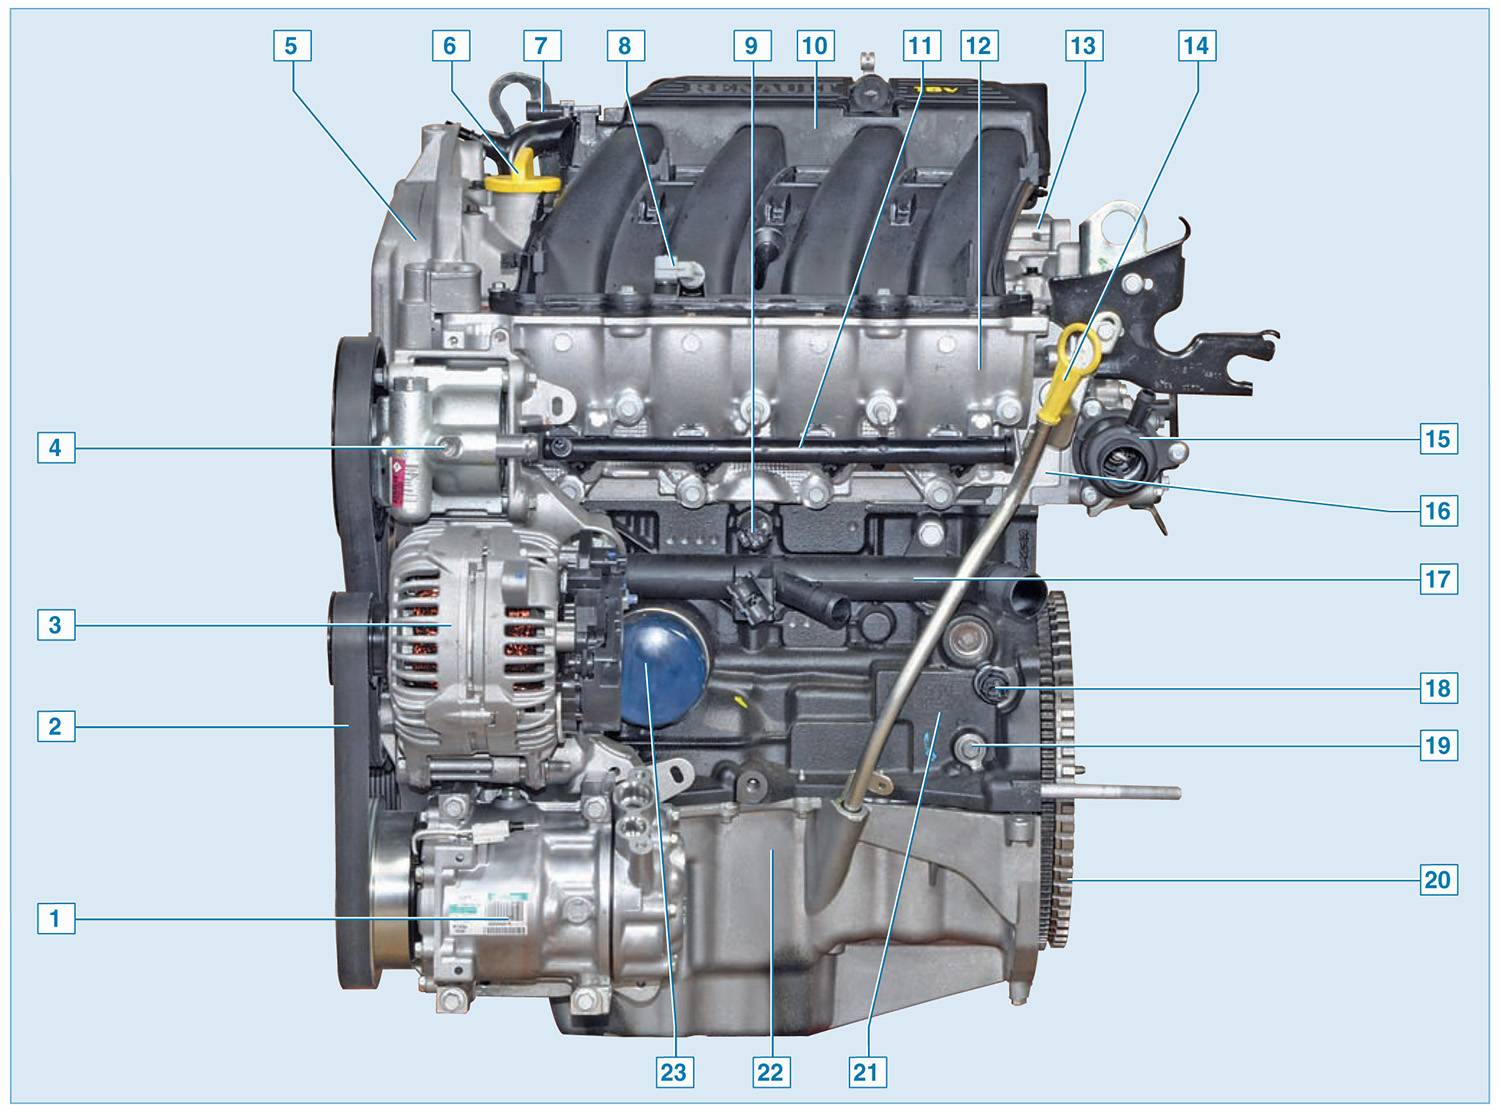 Снятие радиатора двигателя 1,4-1,6(8v) | renault | руководство renault